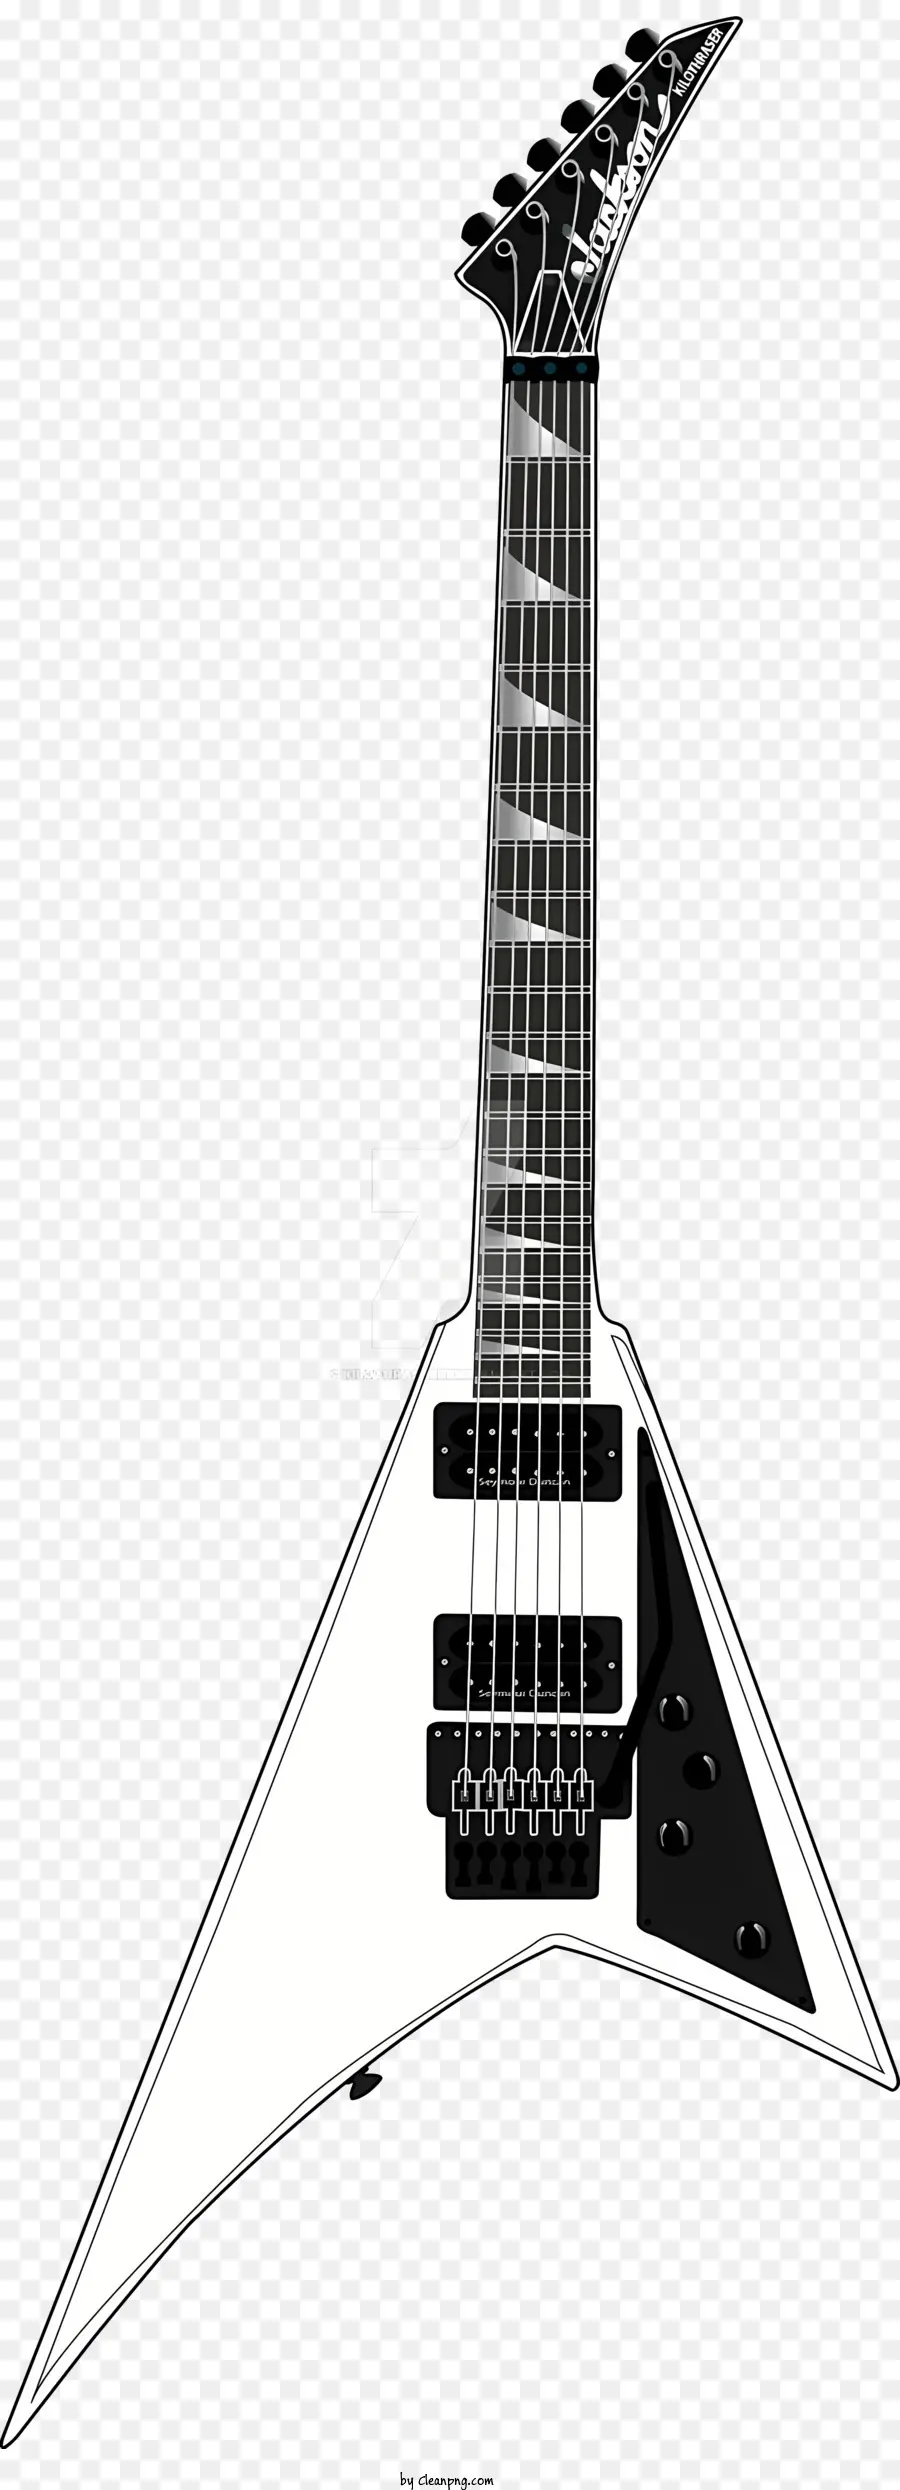 nhạc kịch âm nhạc guitar trắng guitar body body chrome fretboard - Đàn guitar trắng với cơ thể màu đen, băn khoăn chrome